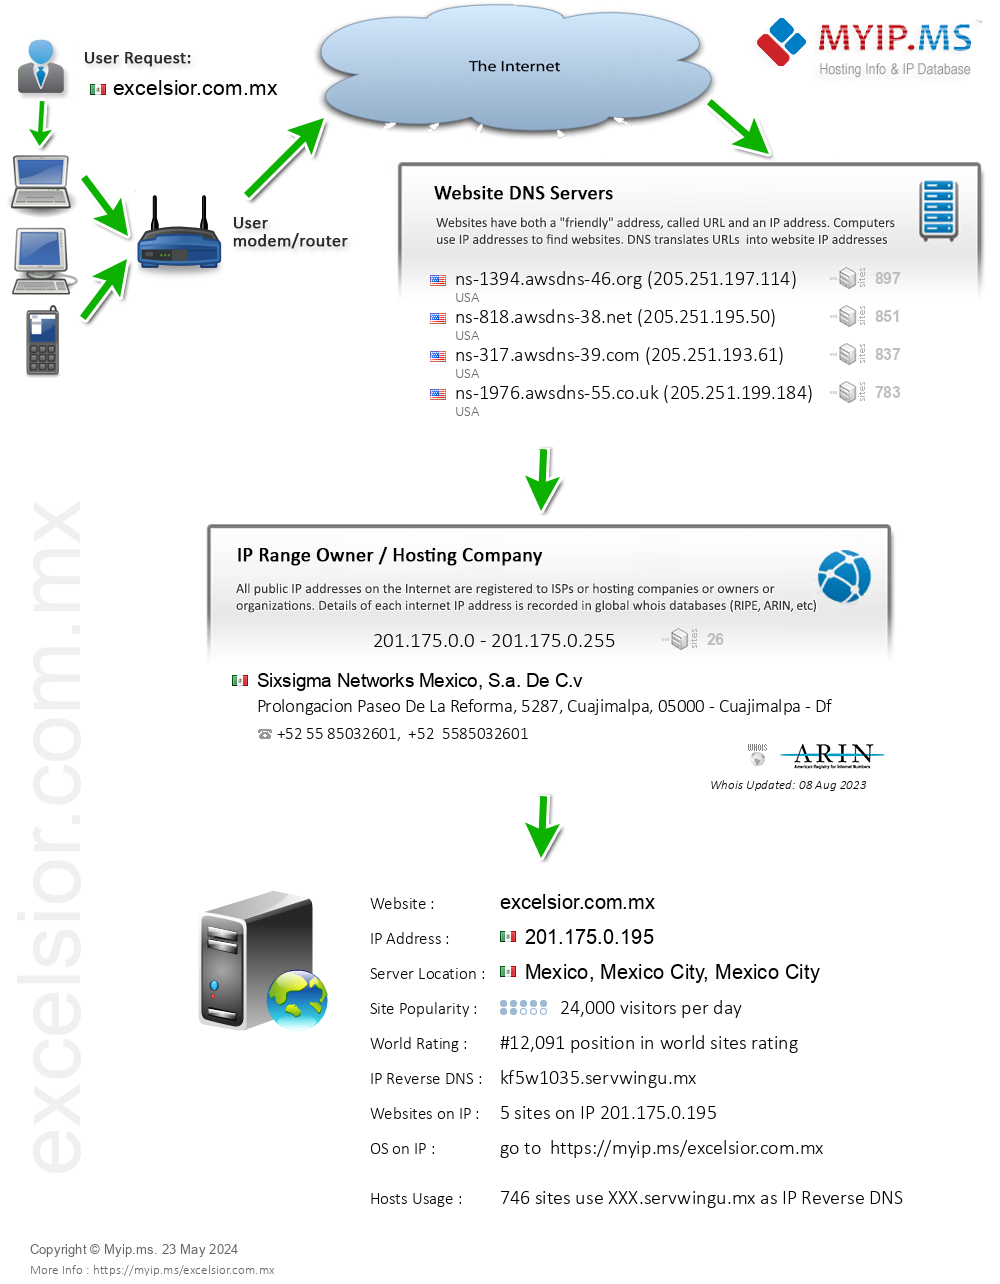 Excelsior.com.mx - Website Hosting Visual IP Diagram